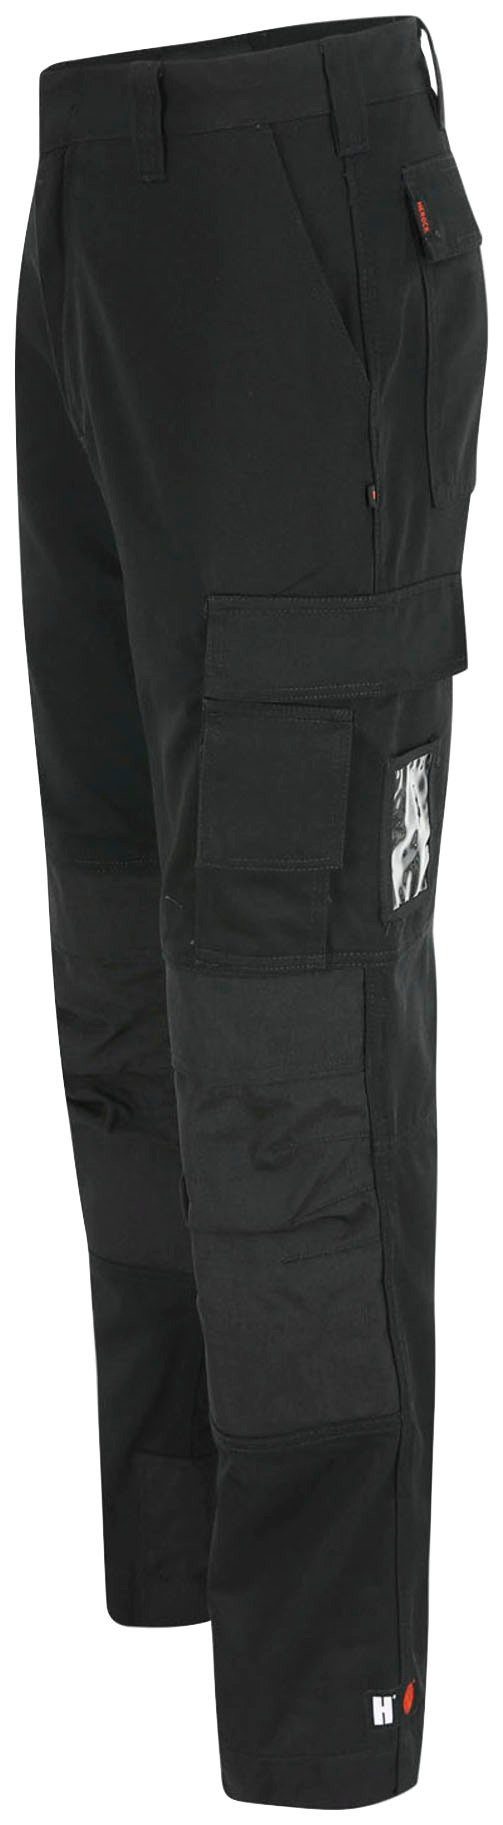 TITAN 12 Herock sehr angenehm SHORTLEG Kurzgröβe, Taschen, Arbeitshose wasserabweisend, schwarz 3-Naht, HOSE